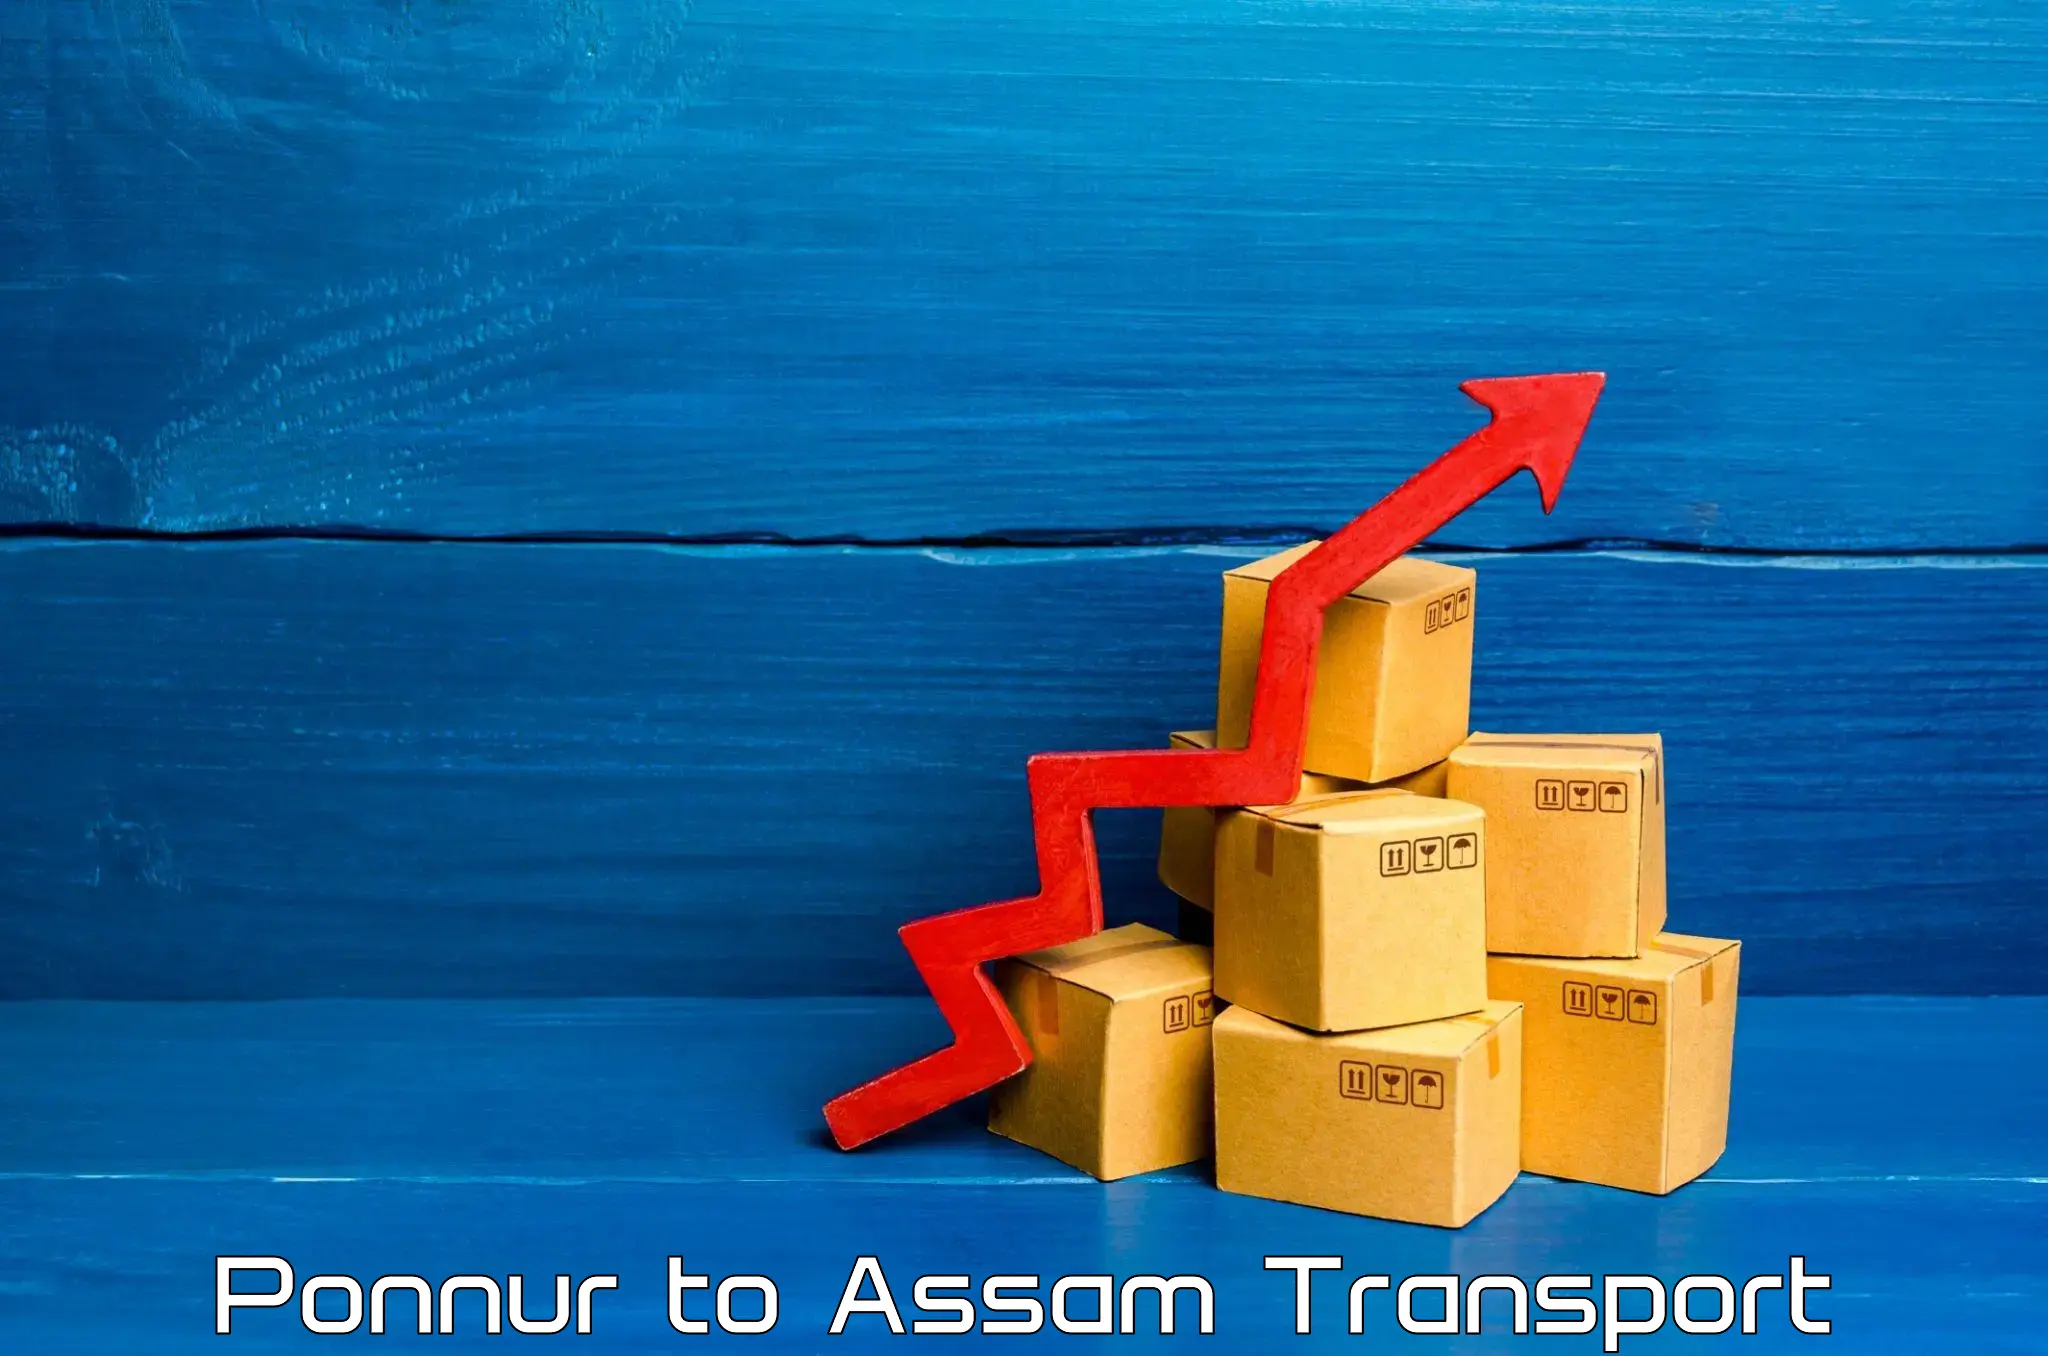 Online transport service Ponnur to Teok